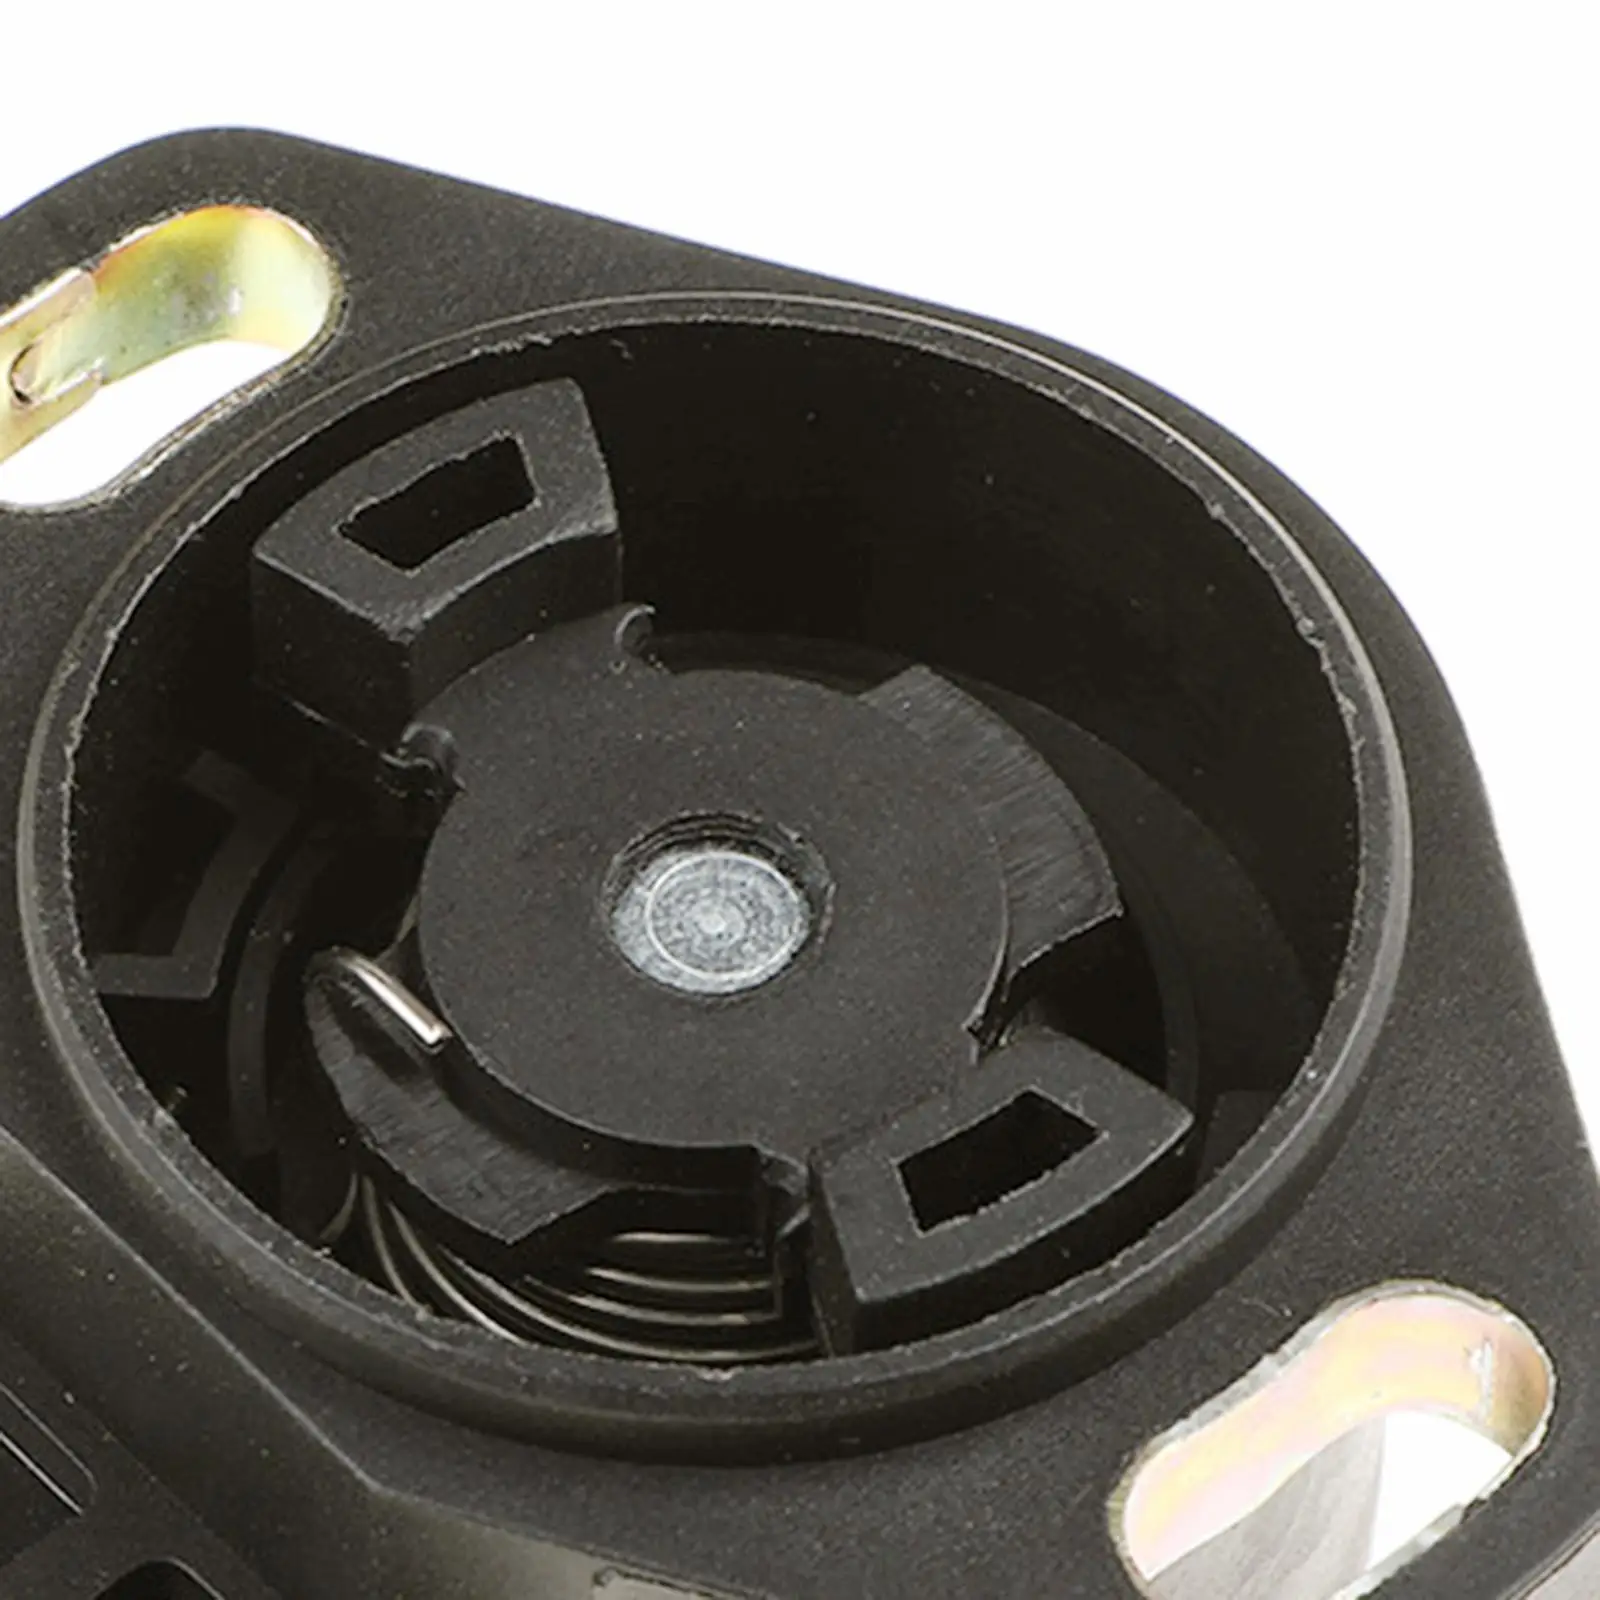 Throttle Position Sensor Replacement Automotive Fit 5102-33005